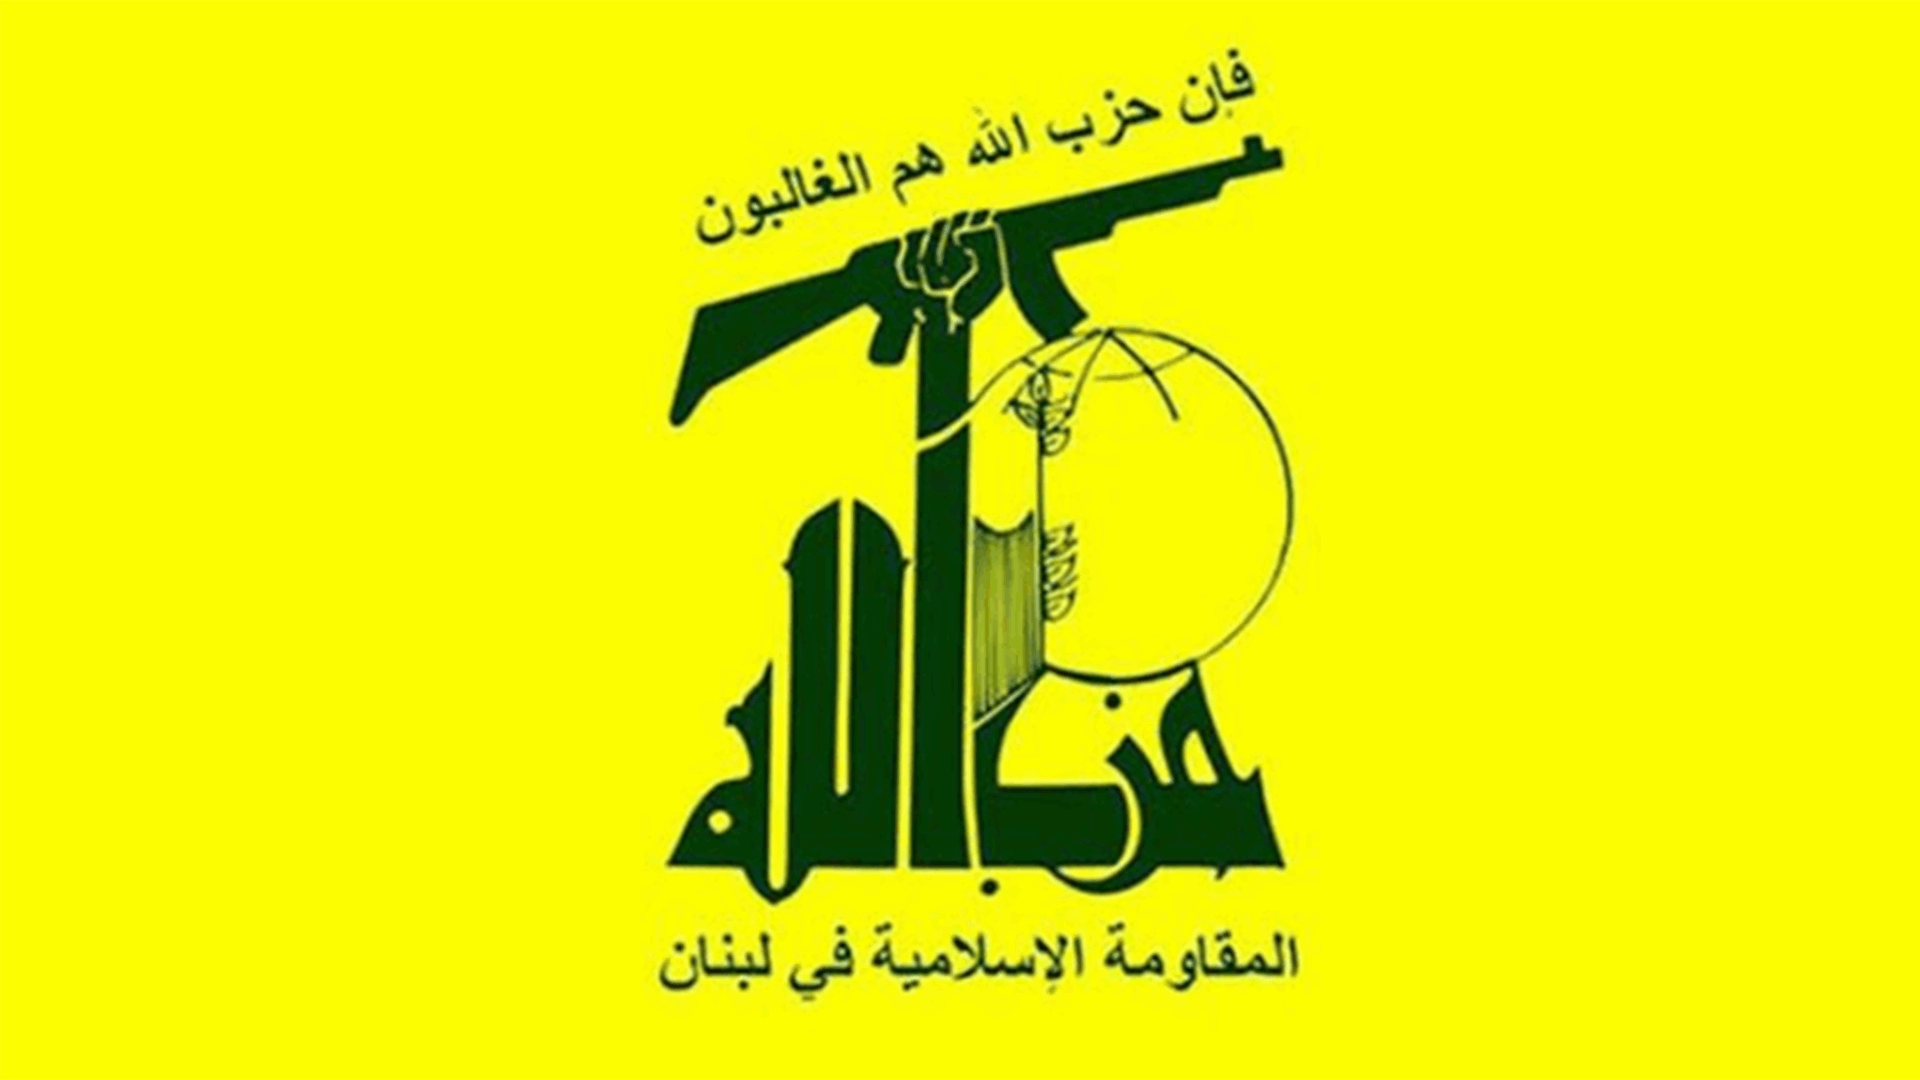 حزب الله: ندين ما قامت به مجلة شارلي إيبدو